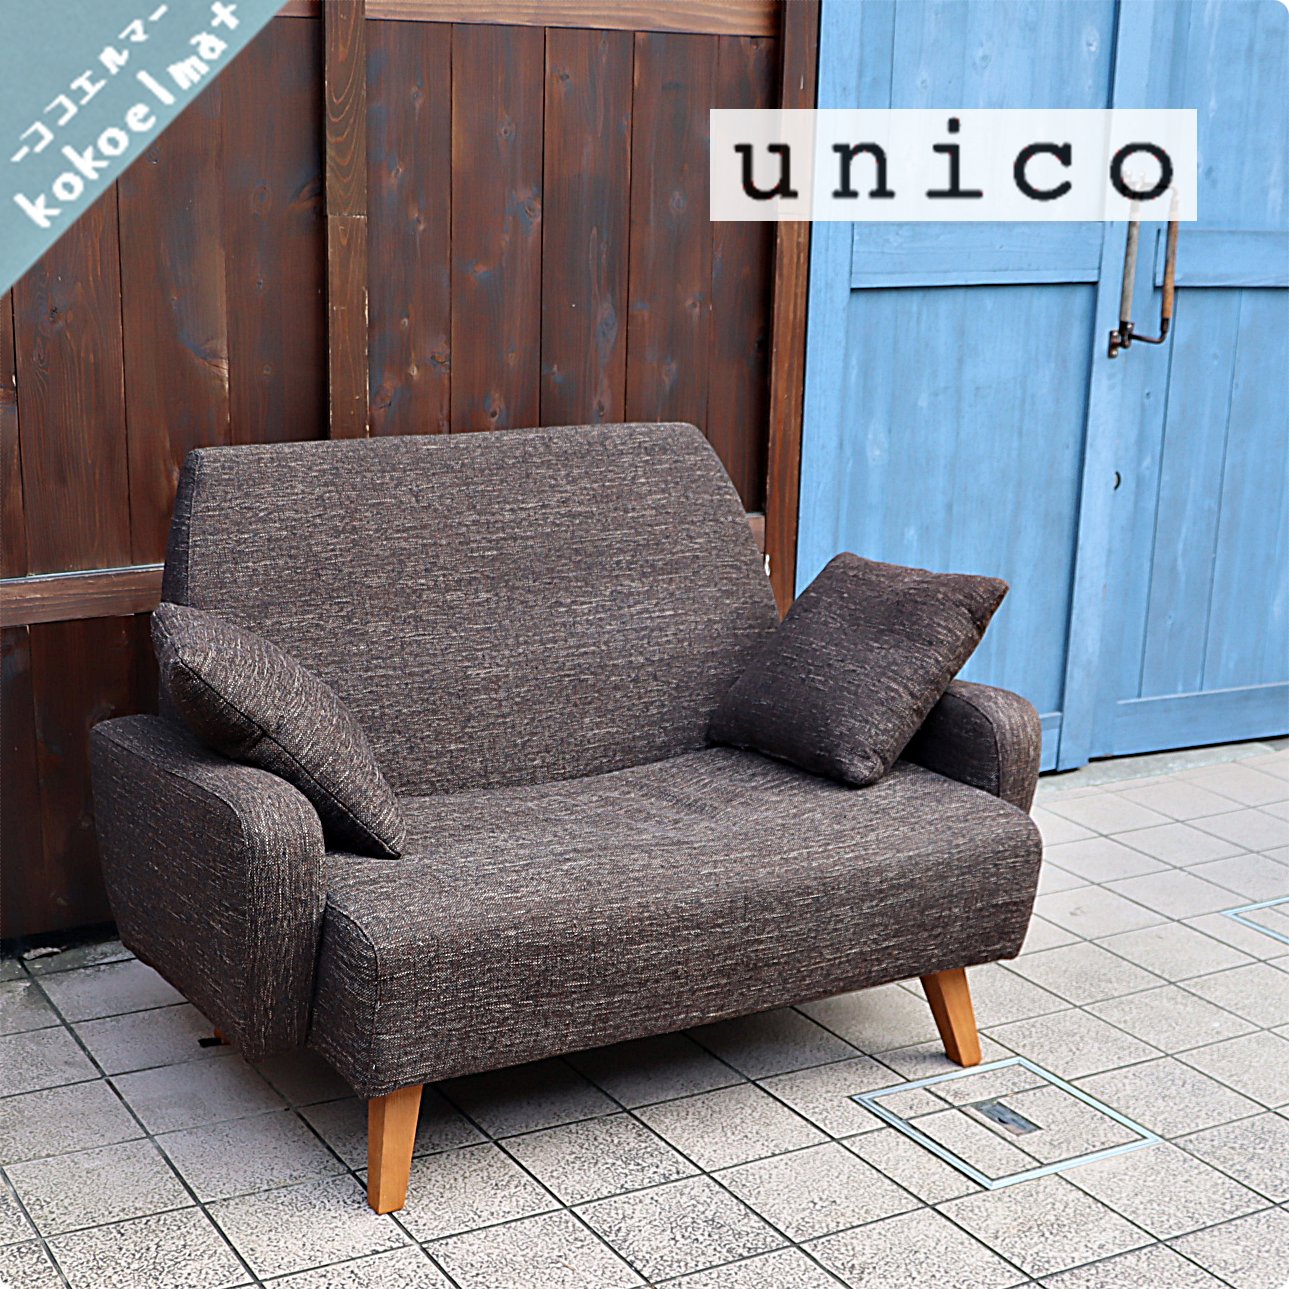 Unico ウニコ のeva エヴァ 2シーターソファです シンプルでコンパクトなデザインの2 人掛けソファーは一人暮らしにも ナチュラルスタイルや北欧スタイルにもおすすめです Kokoelma ココエルマ 雑貨 中古家具 北欧家具 アンティーク家具の通販 インテリア